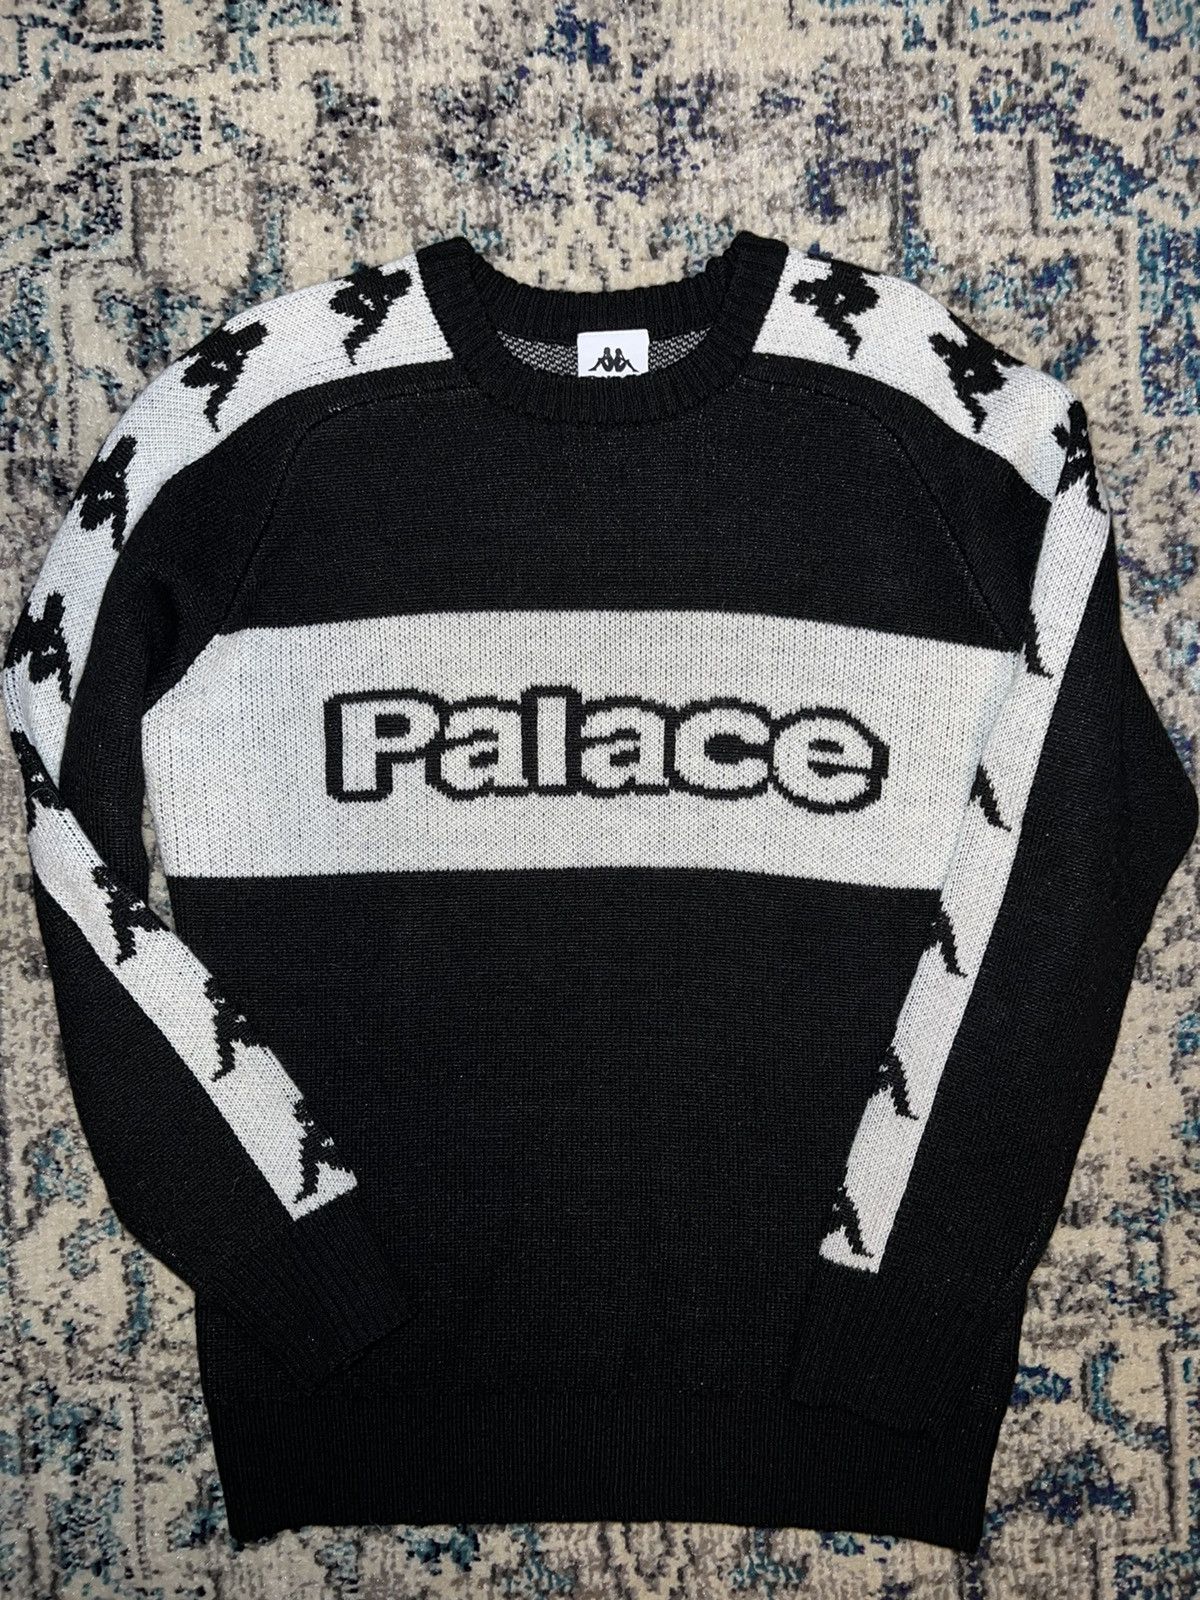 Palace Palace x Kappa Knit Sweater | Grailed